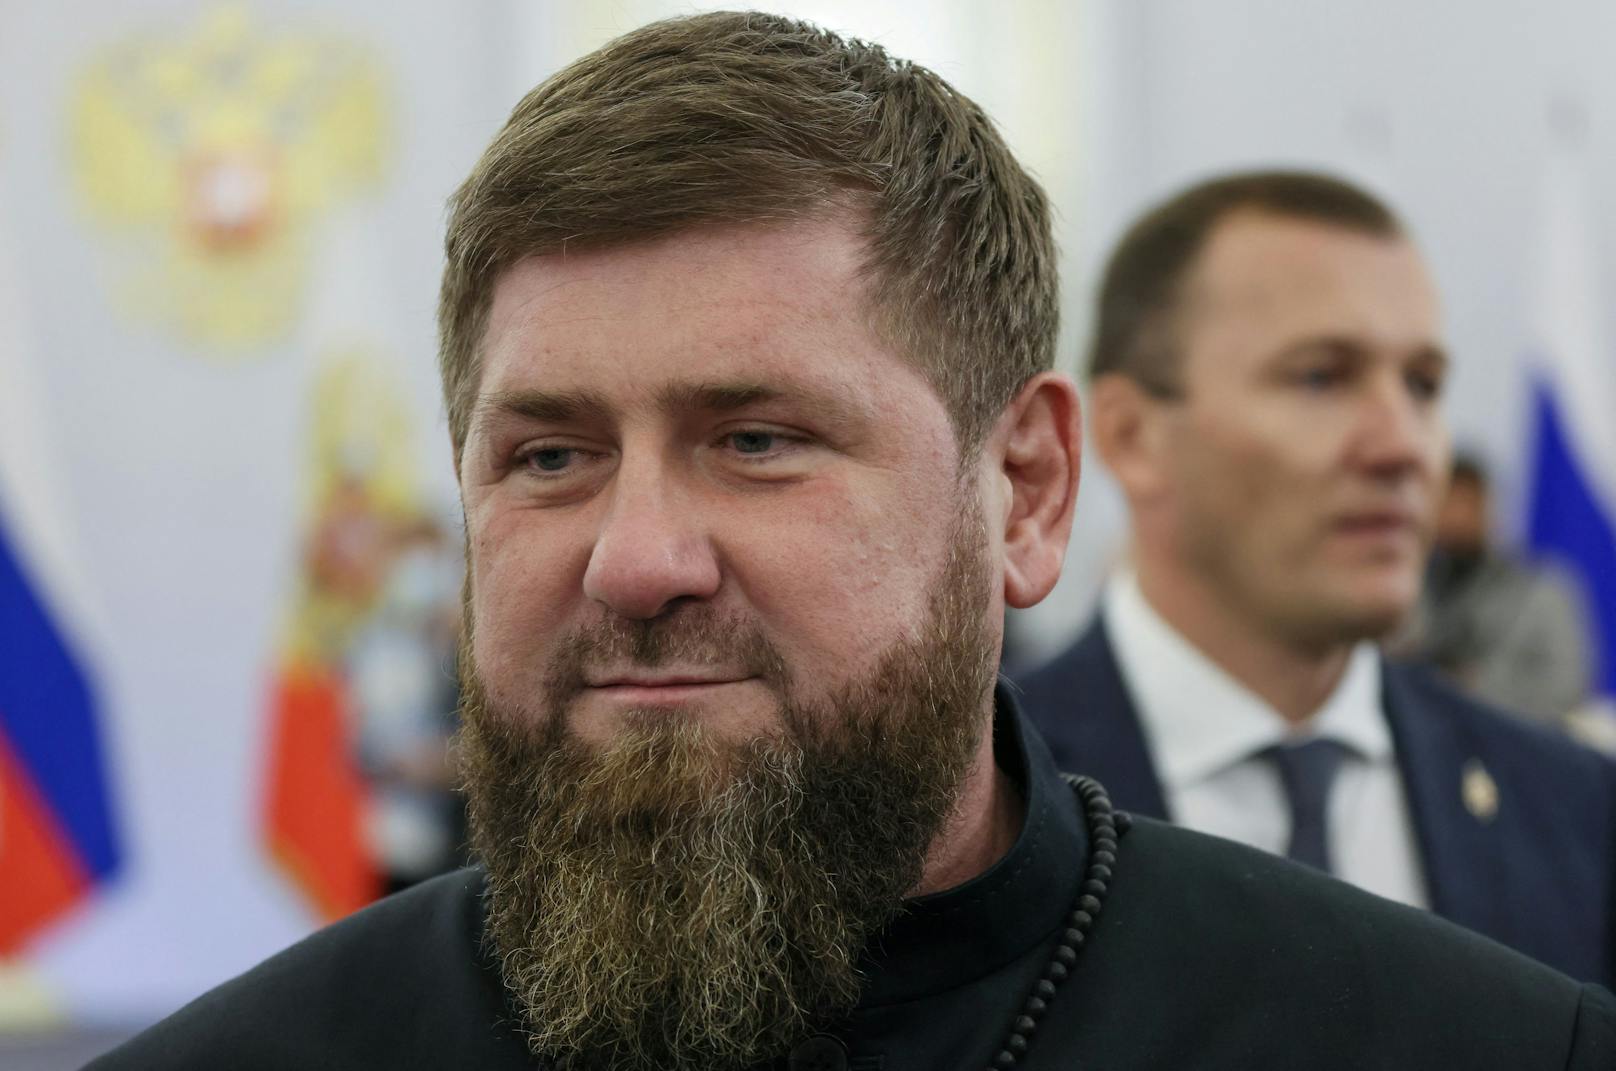 Der tschetschenische Staatschef Ramsan Kadyrow nimmt ebenfalls an der&nbsp; Zeremonie teil, bei der die Annexion der von Russland kontrollierten Gebiete der vier ukrainischen Regionen Donezk, Luhansk, Cherson und Saporischschja erklärt wird.